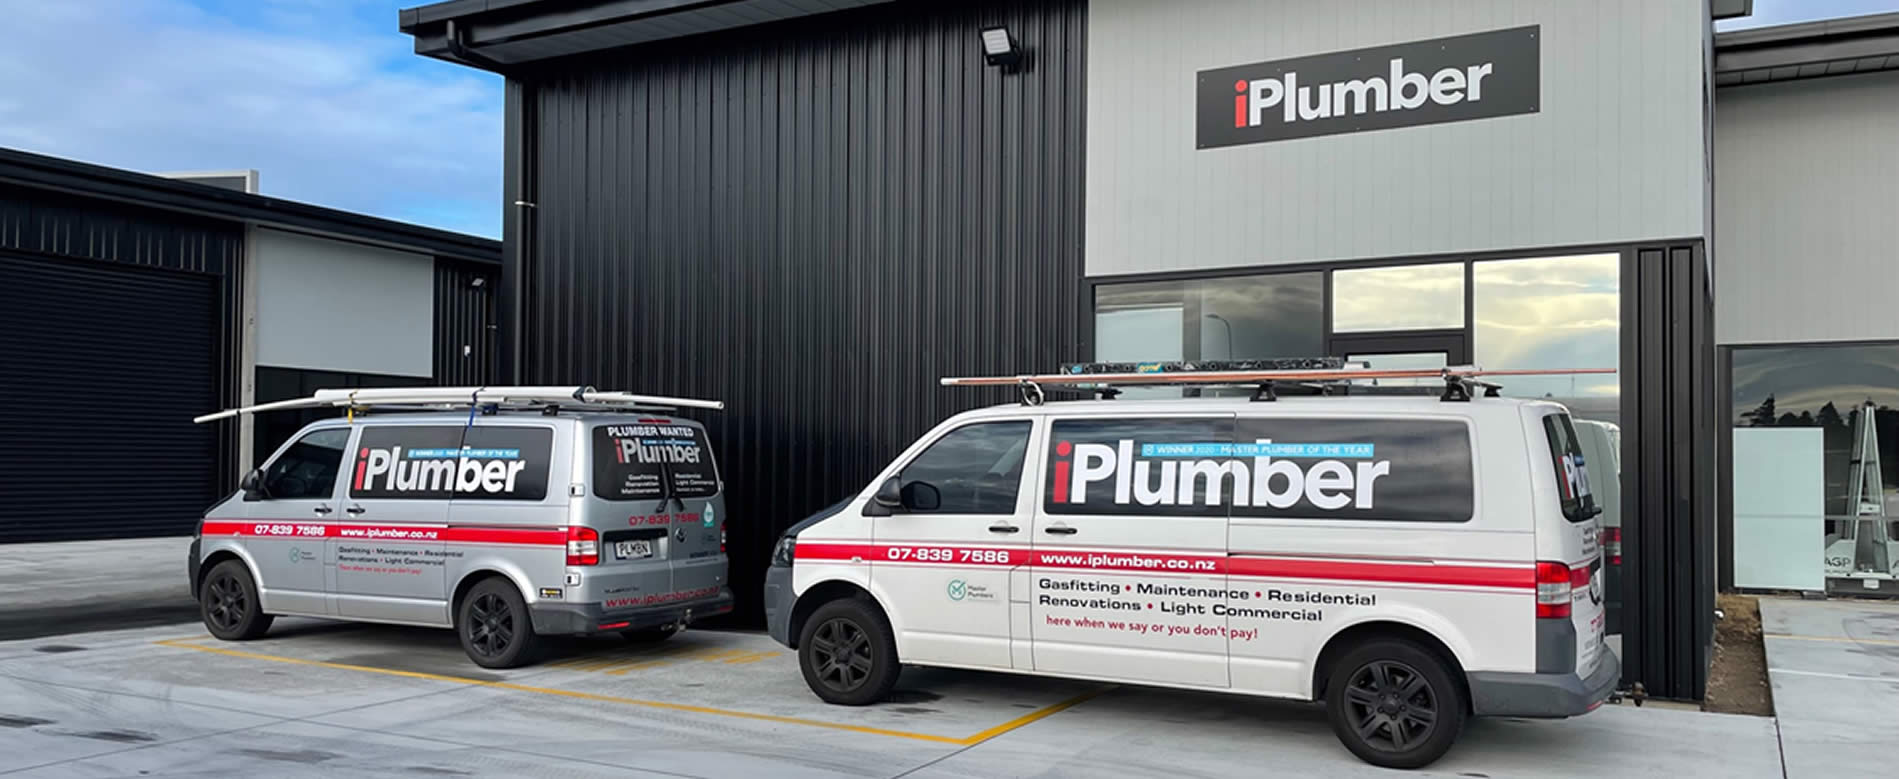 Plumber Workshop and Vans